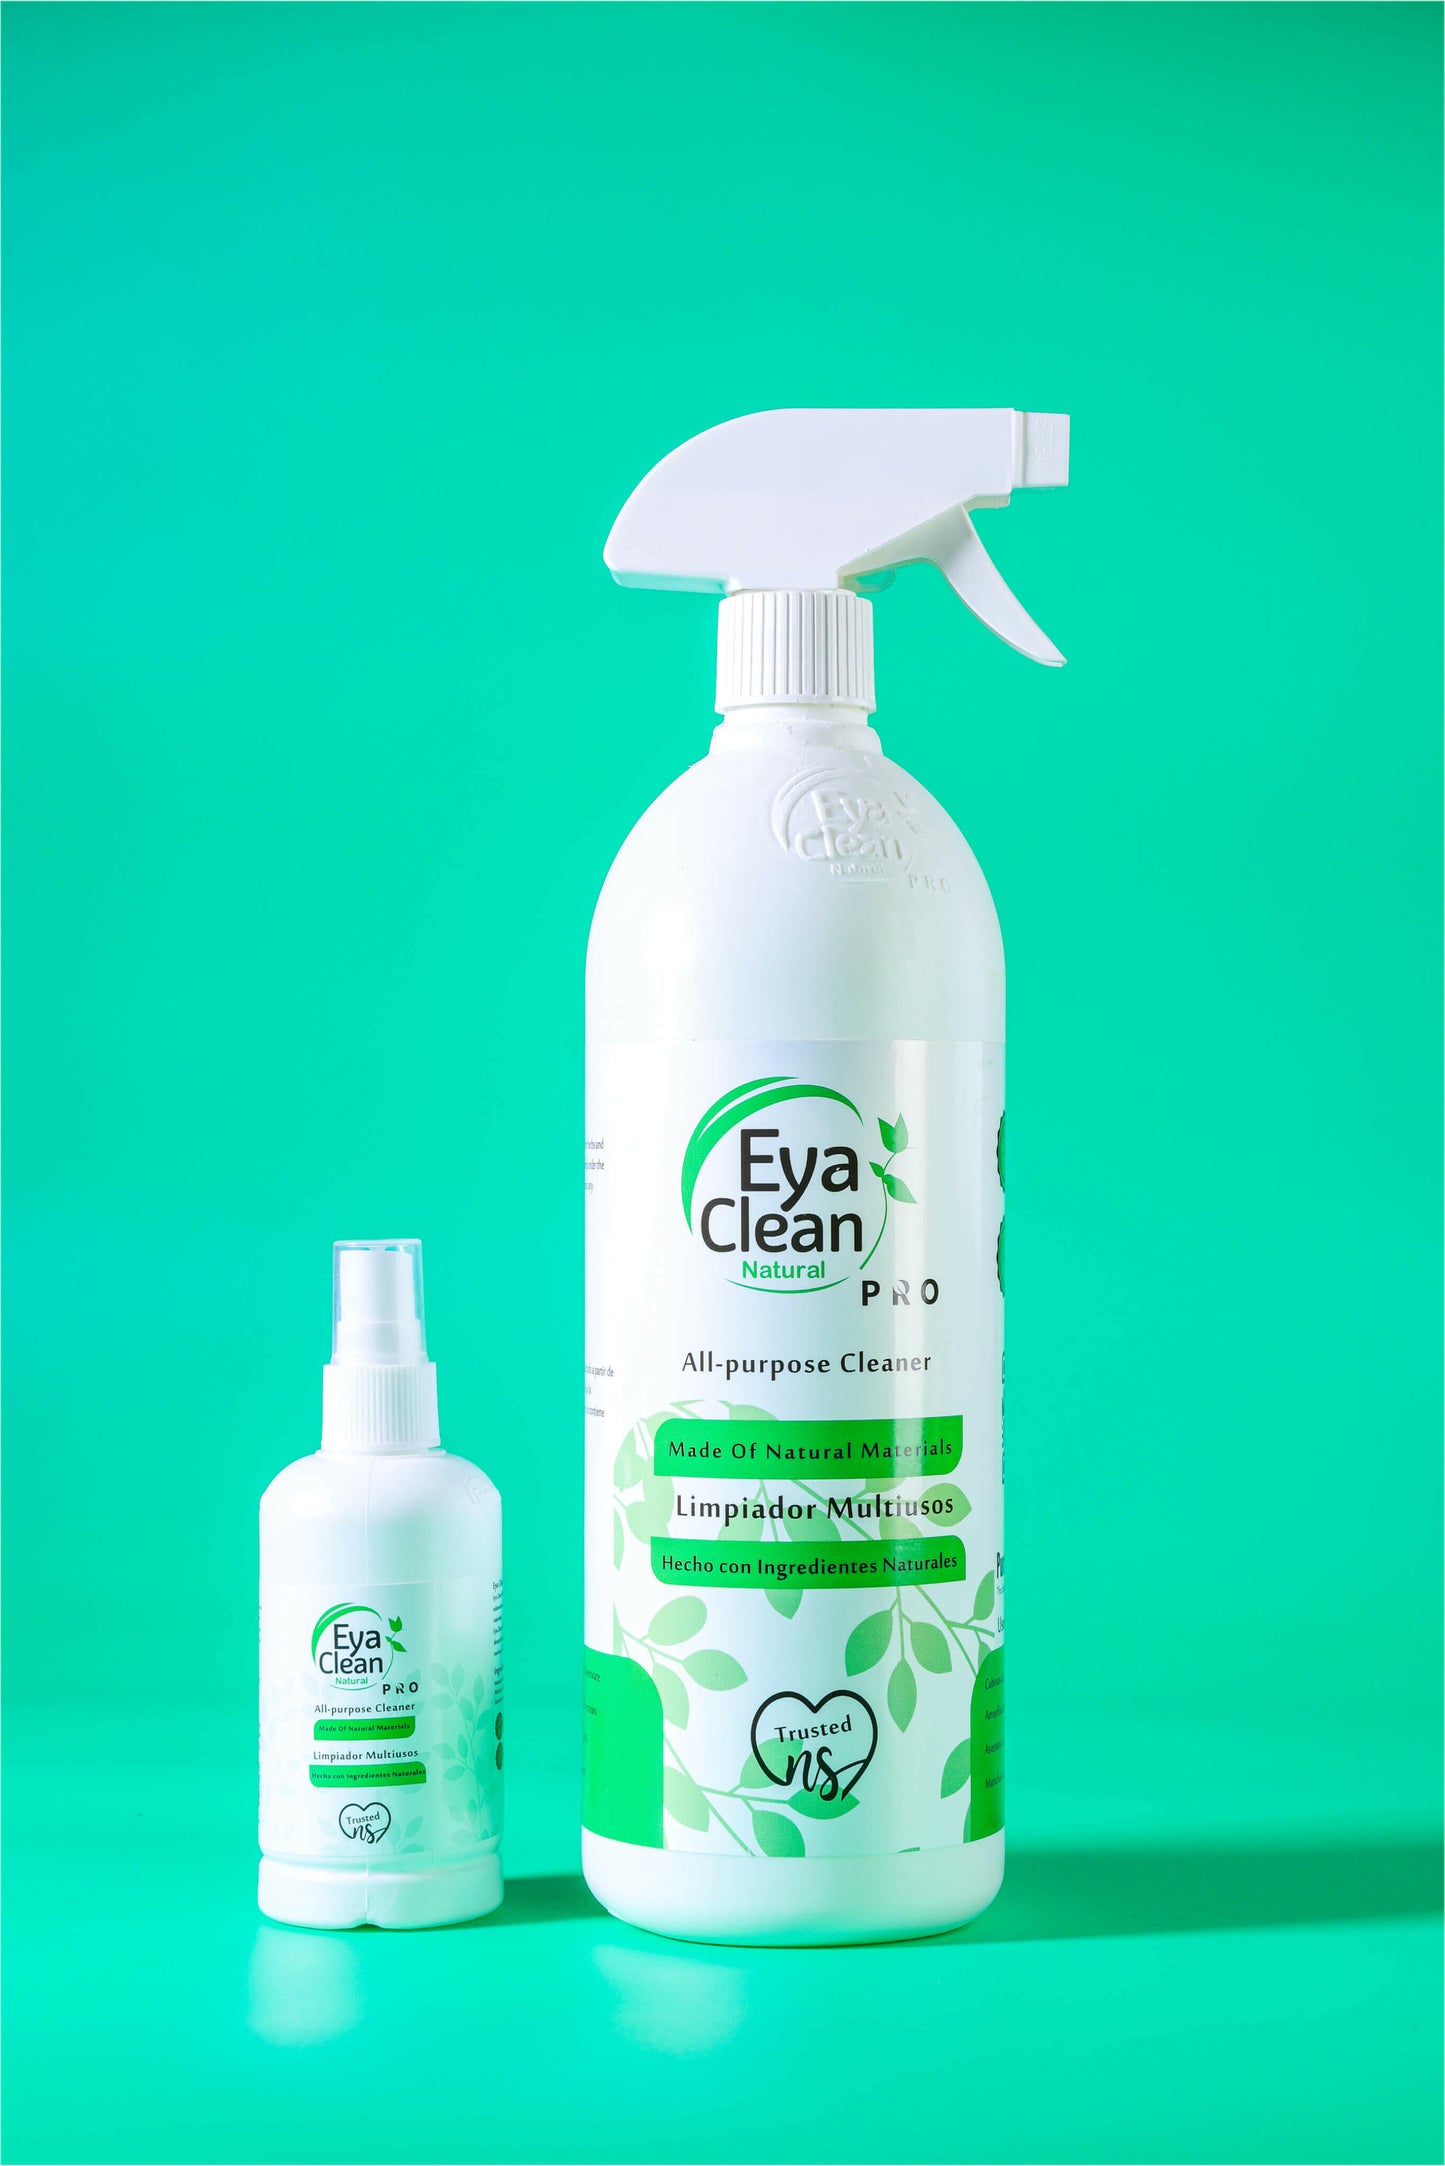 Eya Clean Pro - The Starter Kit